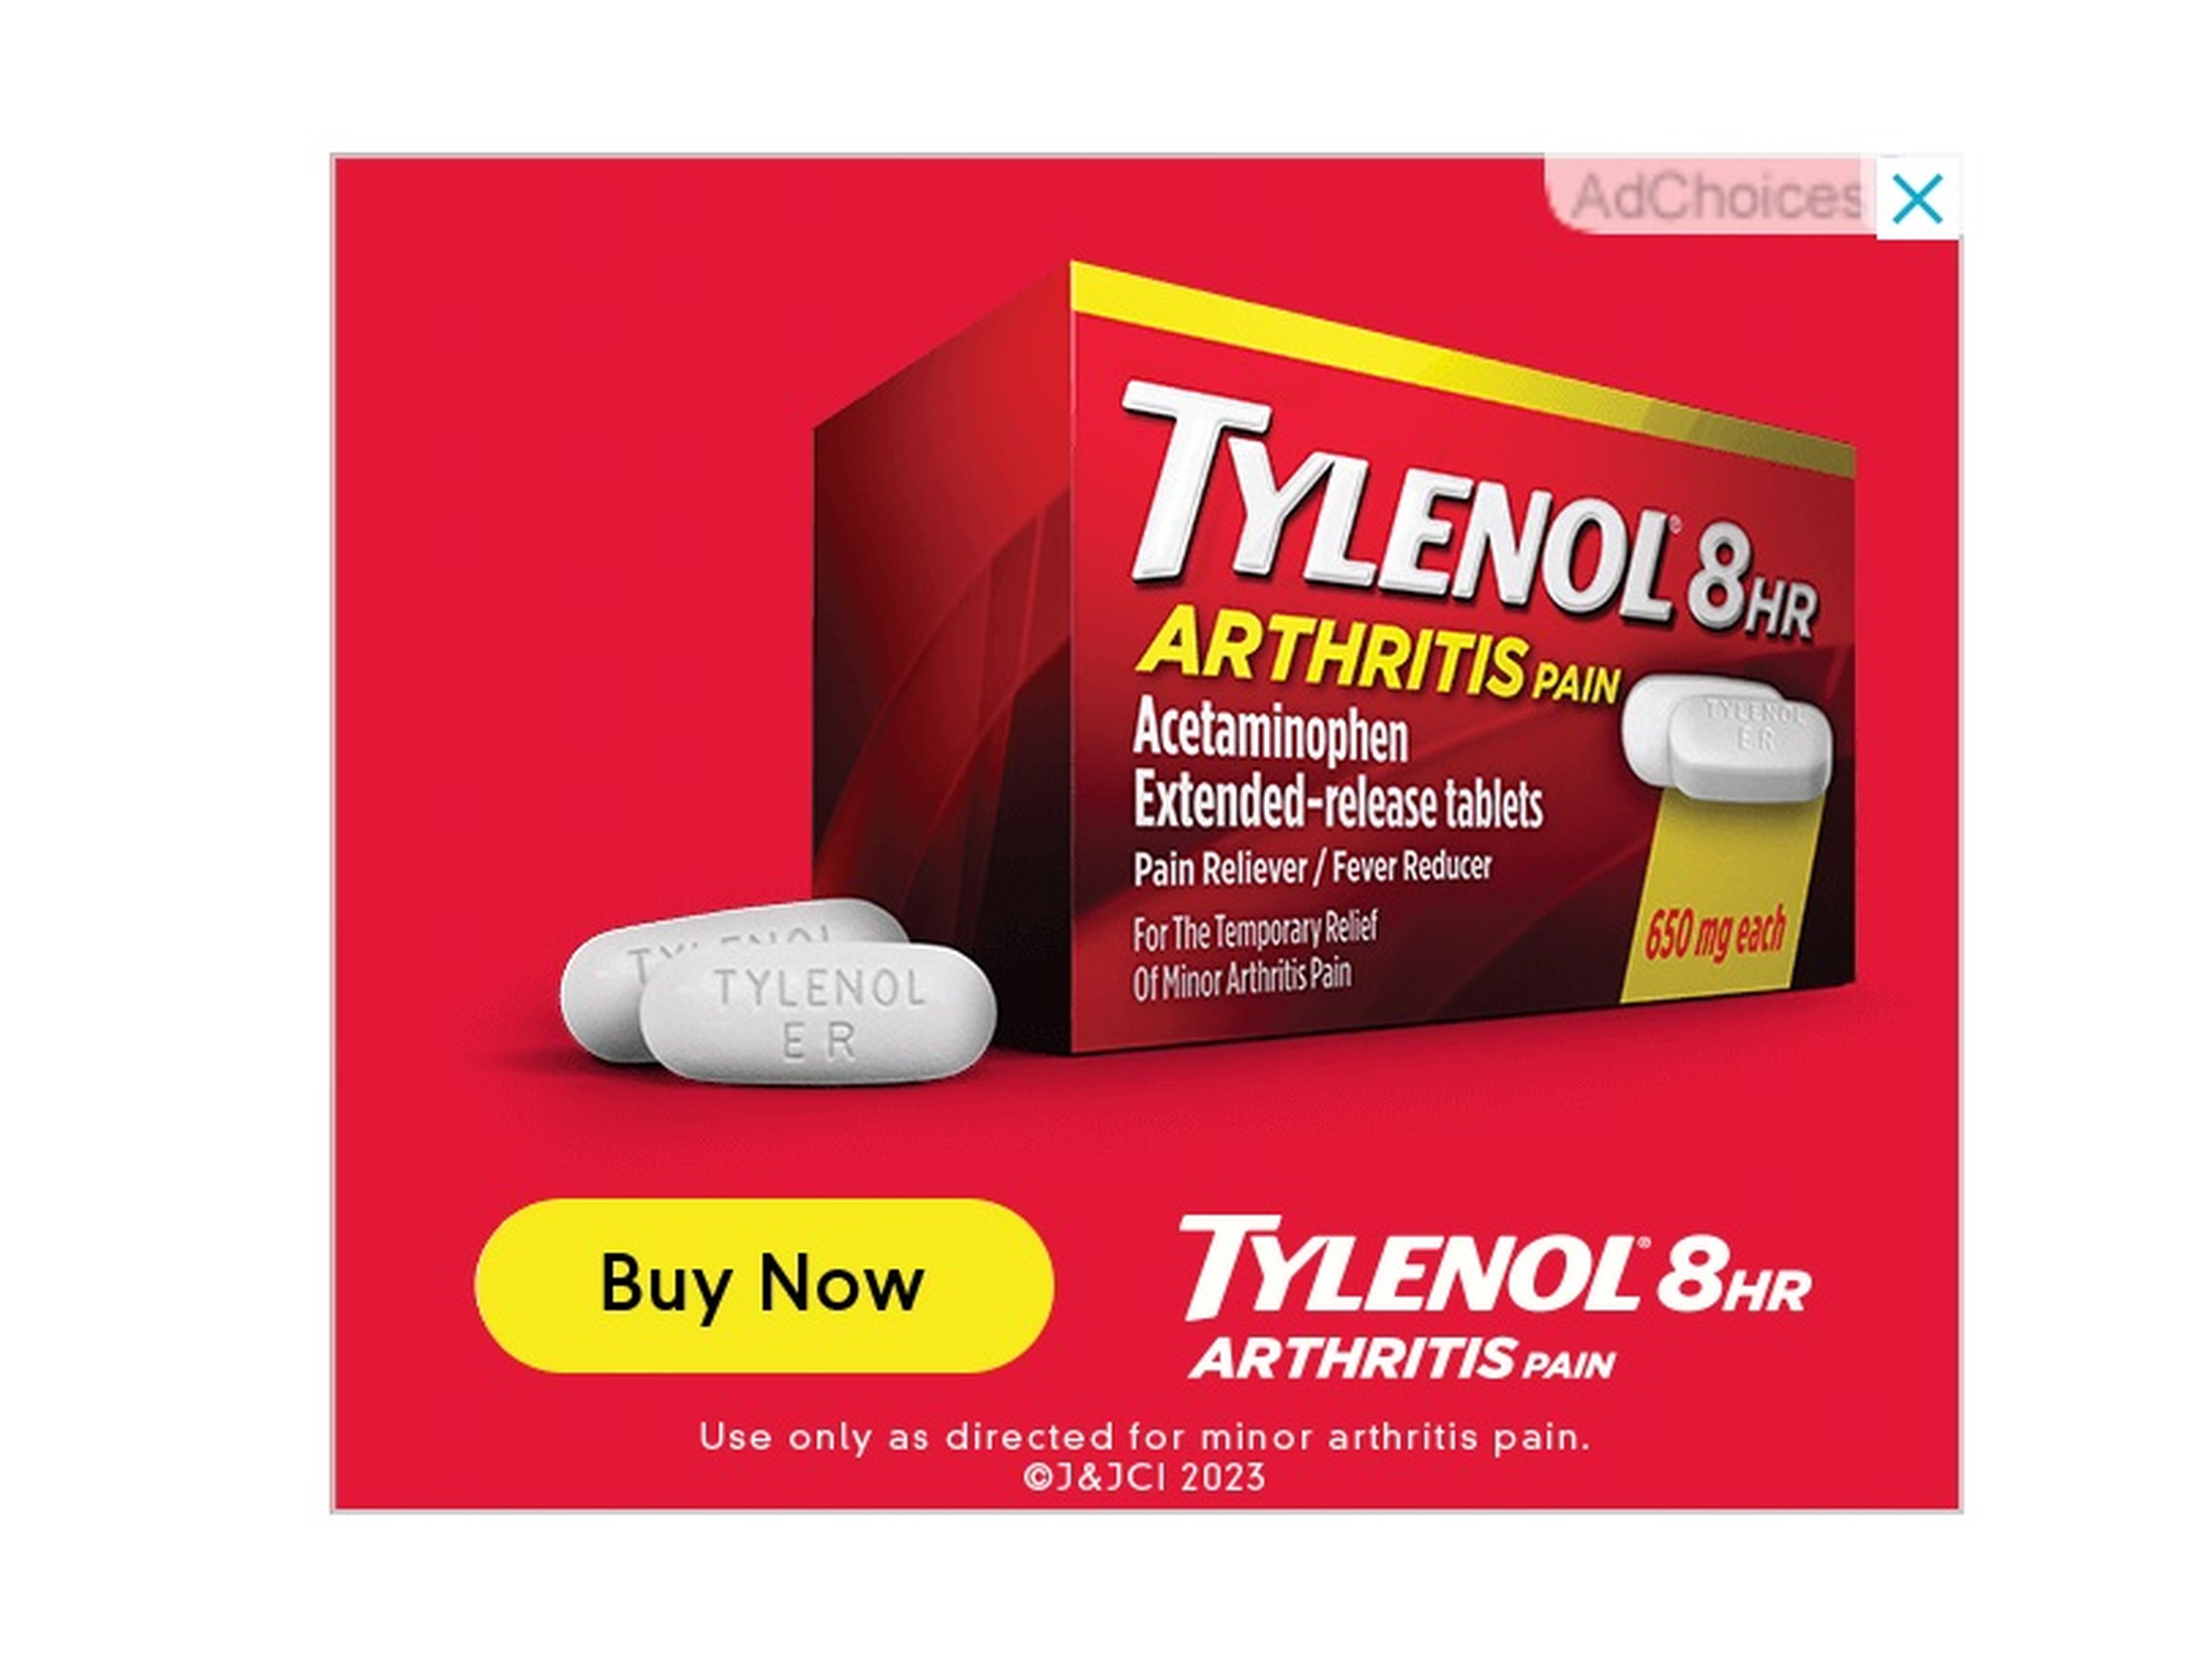 Como una mujer joven de 25 años, no estoy segura de ser el grupo demográfico adecuado para la variante de Tylenol contra la artritis, pero es normal, ya que no tenía activados los anuncios personalizados.